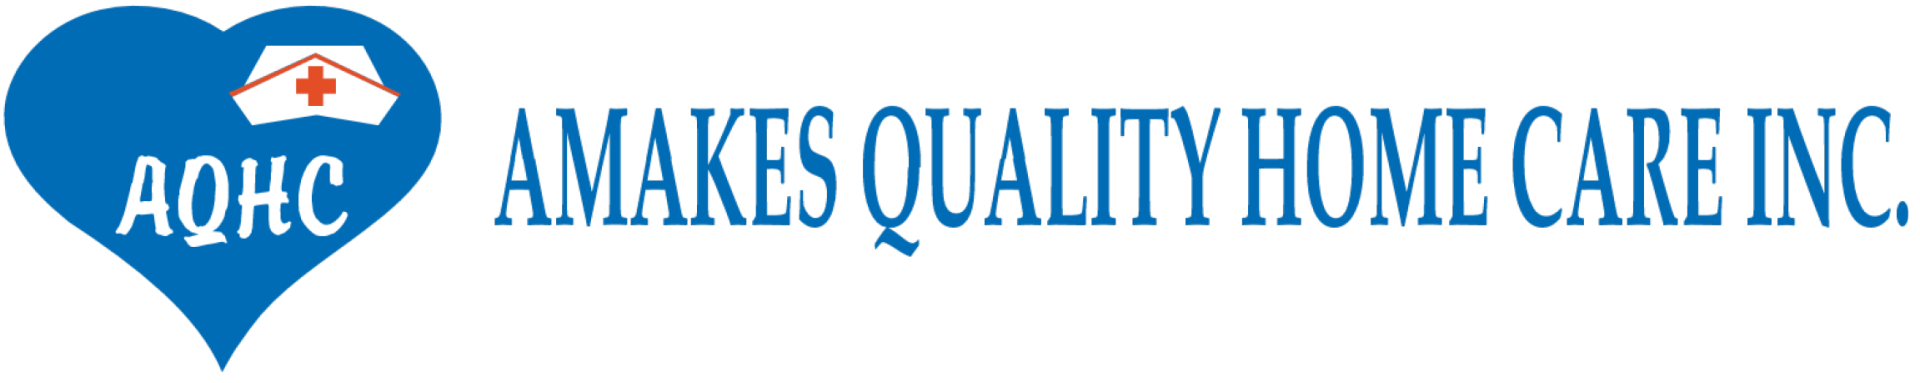 Amakes Quality Home Care Inc. - Logo